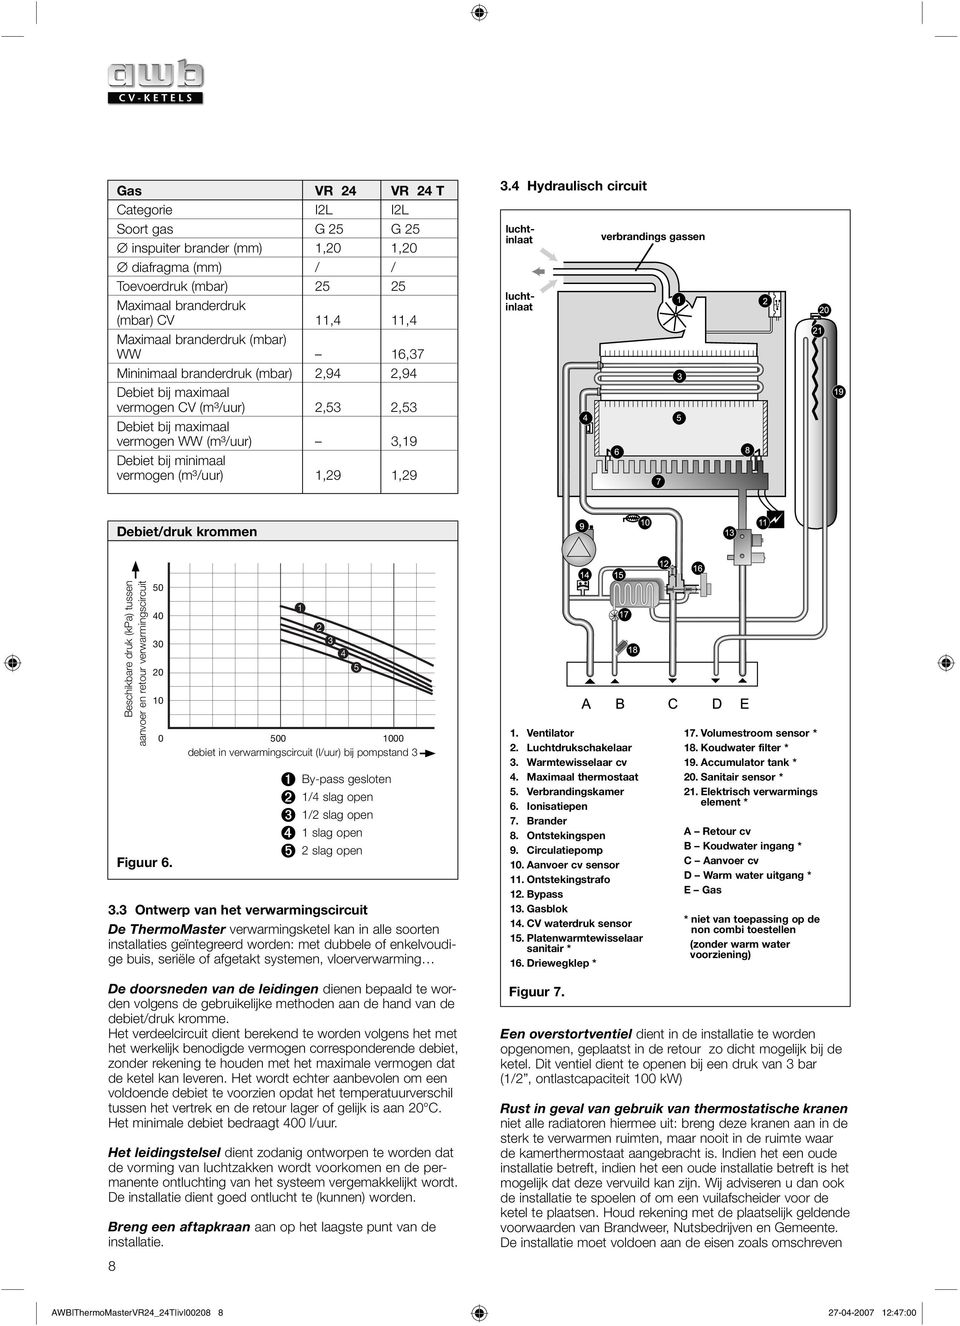 4 Hydraulisch circuit luchtinlaat luchtinlaat verbrandings gassen Debiet/druk krommen Beschikbare druk (kpa) tussen aanvoer en retour verwarmingscircuit 50 40 0 0 0 Figuur 6.